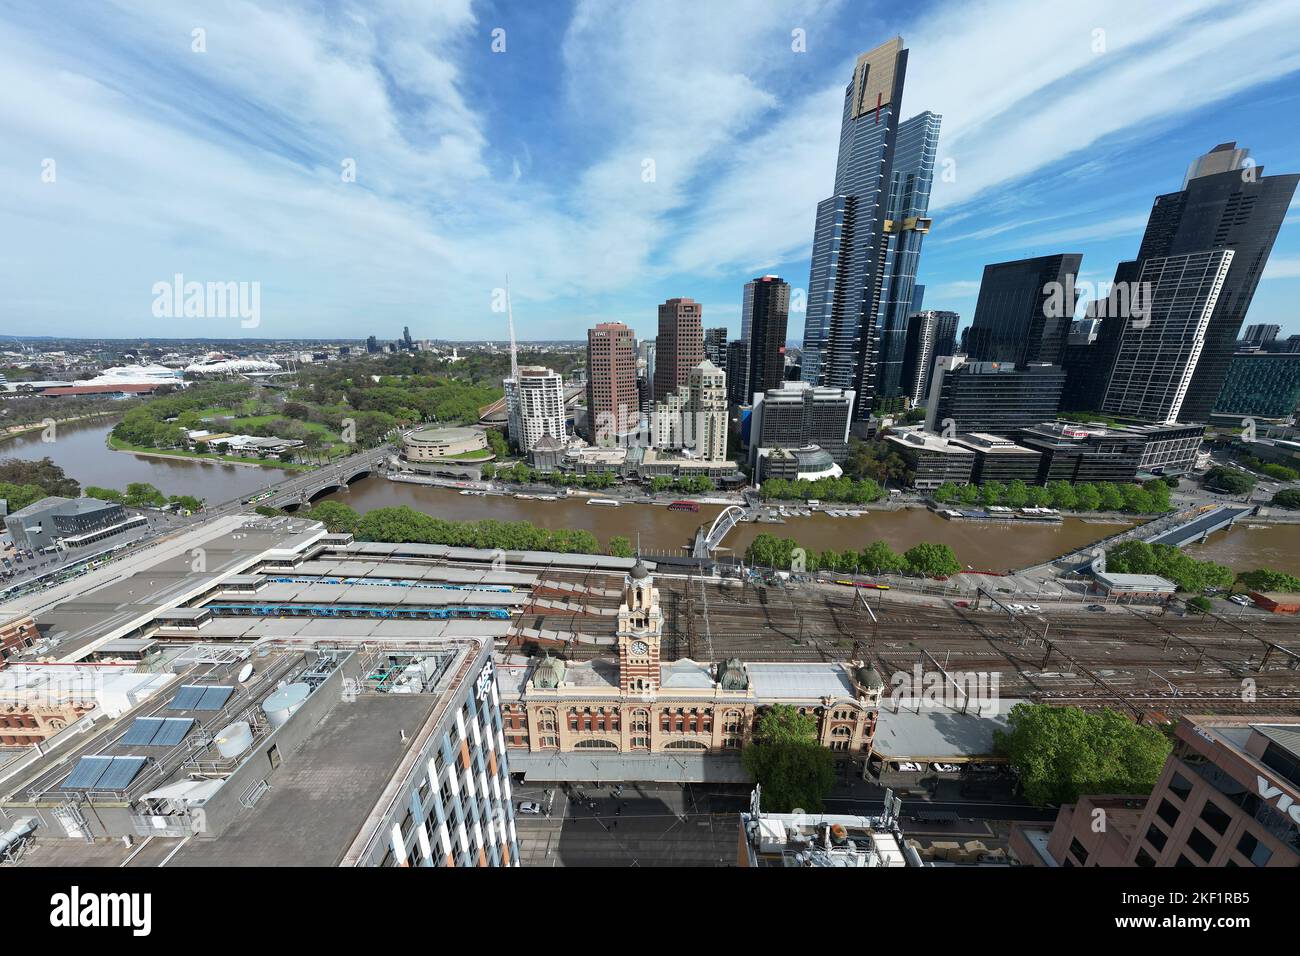 Vue aérienne de la gare de Flinders Street, Melbourne, Australie Banque D'Images